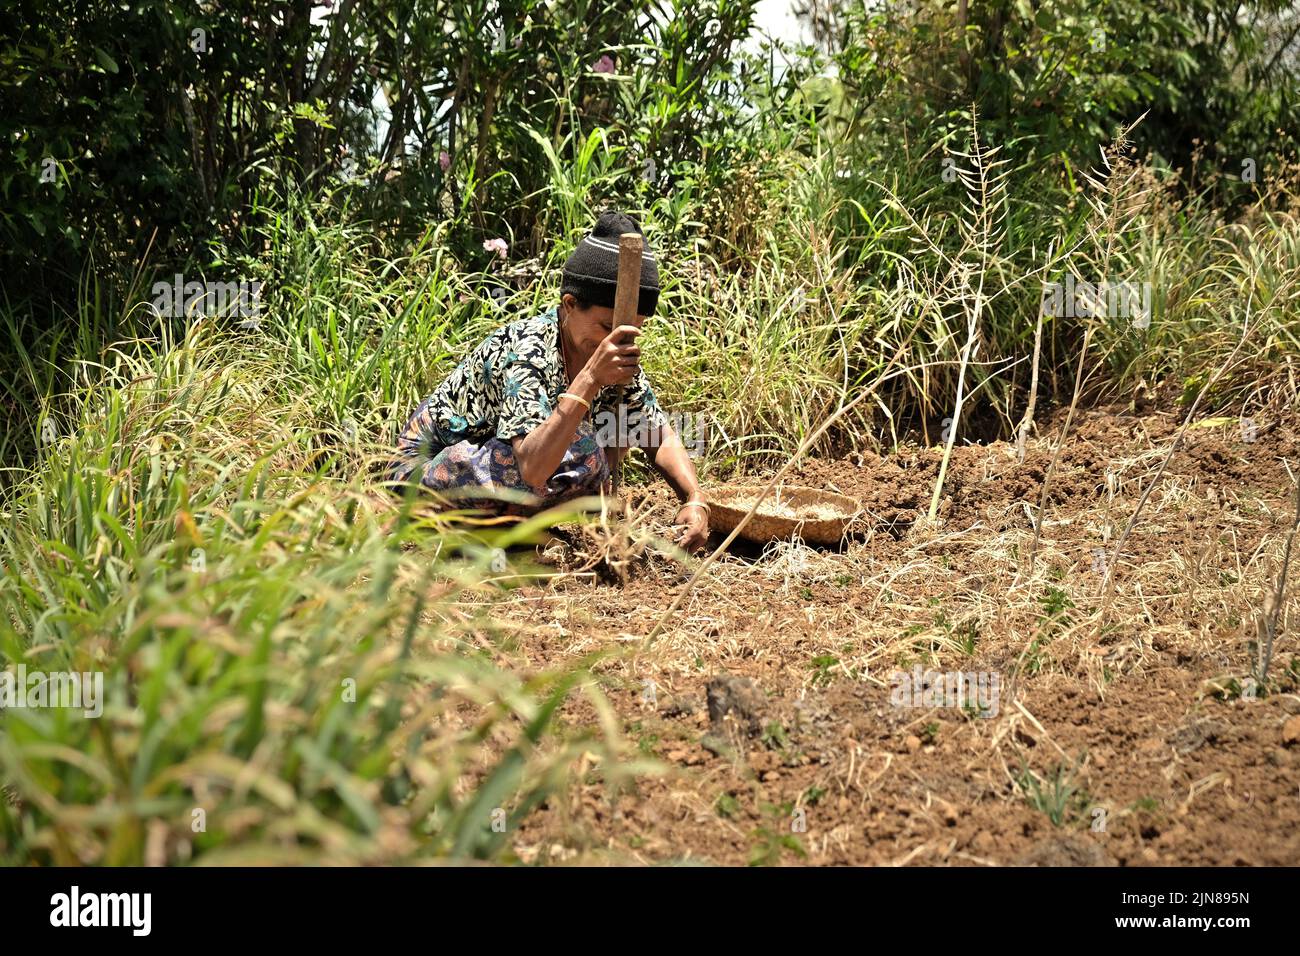 Yuliana Fuka, eine Dorfbewohnerin, arbeitet auf ihrem landwirtschaftlichen Feld im Dorf Fatumnasi, Süd-Zentral-Timor, Ost-Nusa Tenggara, Indonesien. Stockfoto